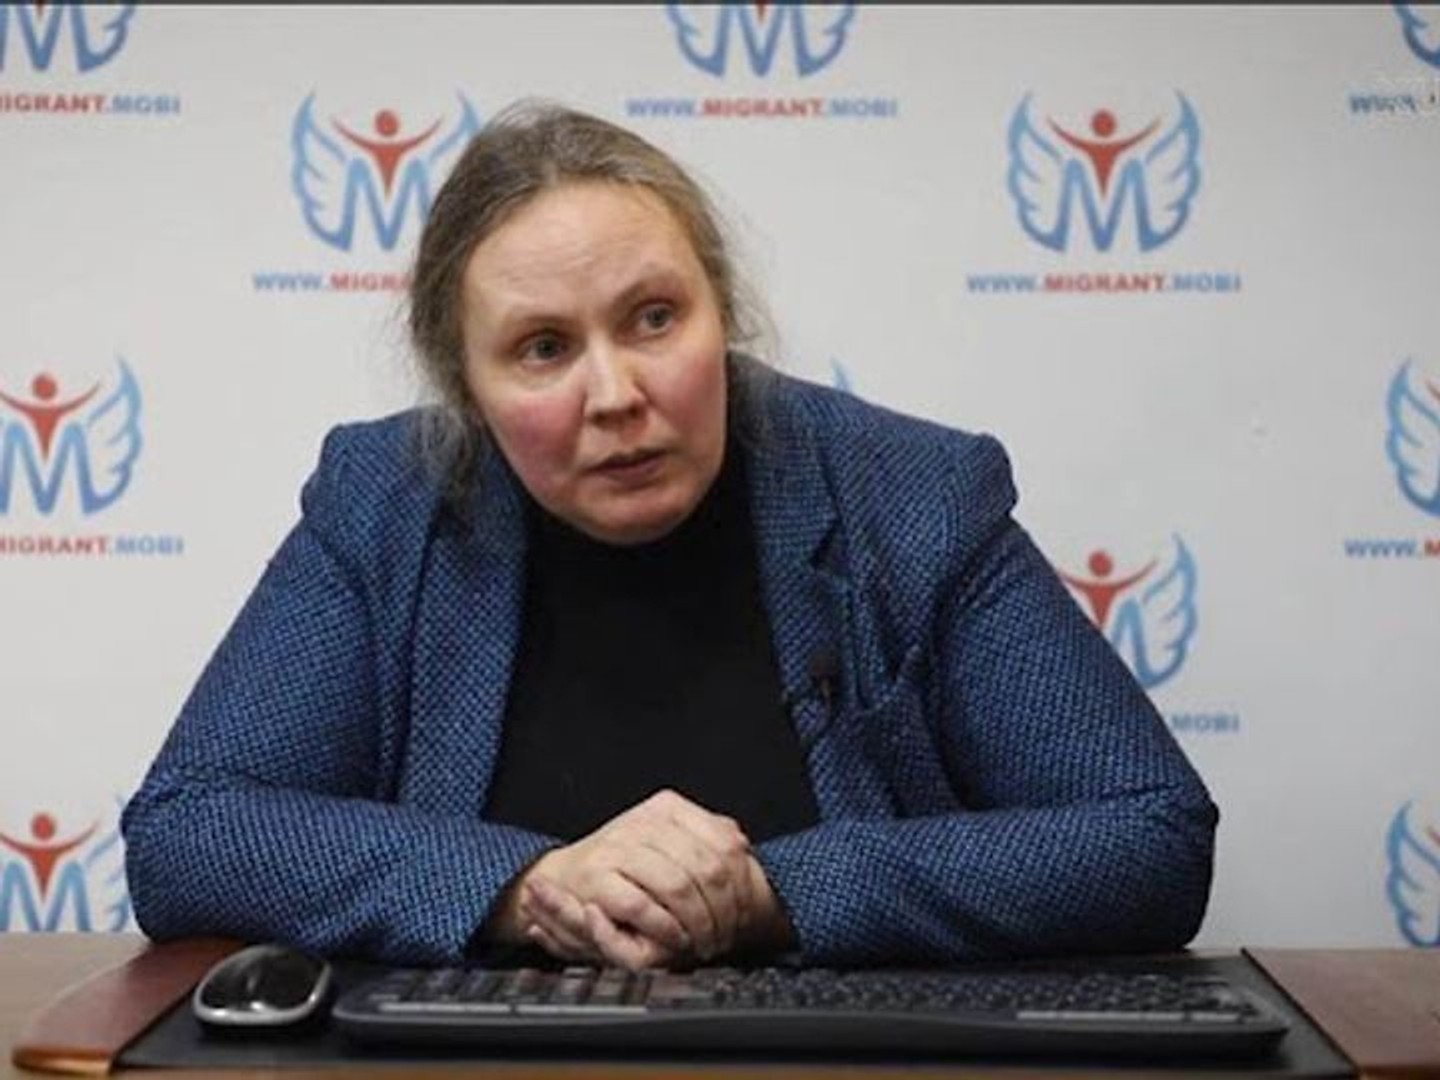 Правозахисниця Валентина Чупик покинула транзитну зону Шереметьєво і вилетіла в Єреван